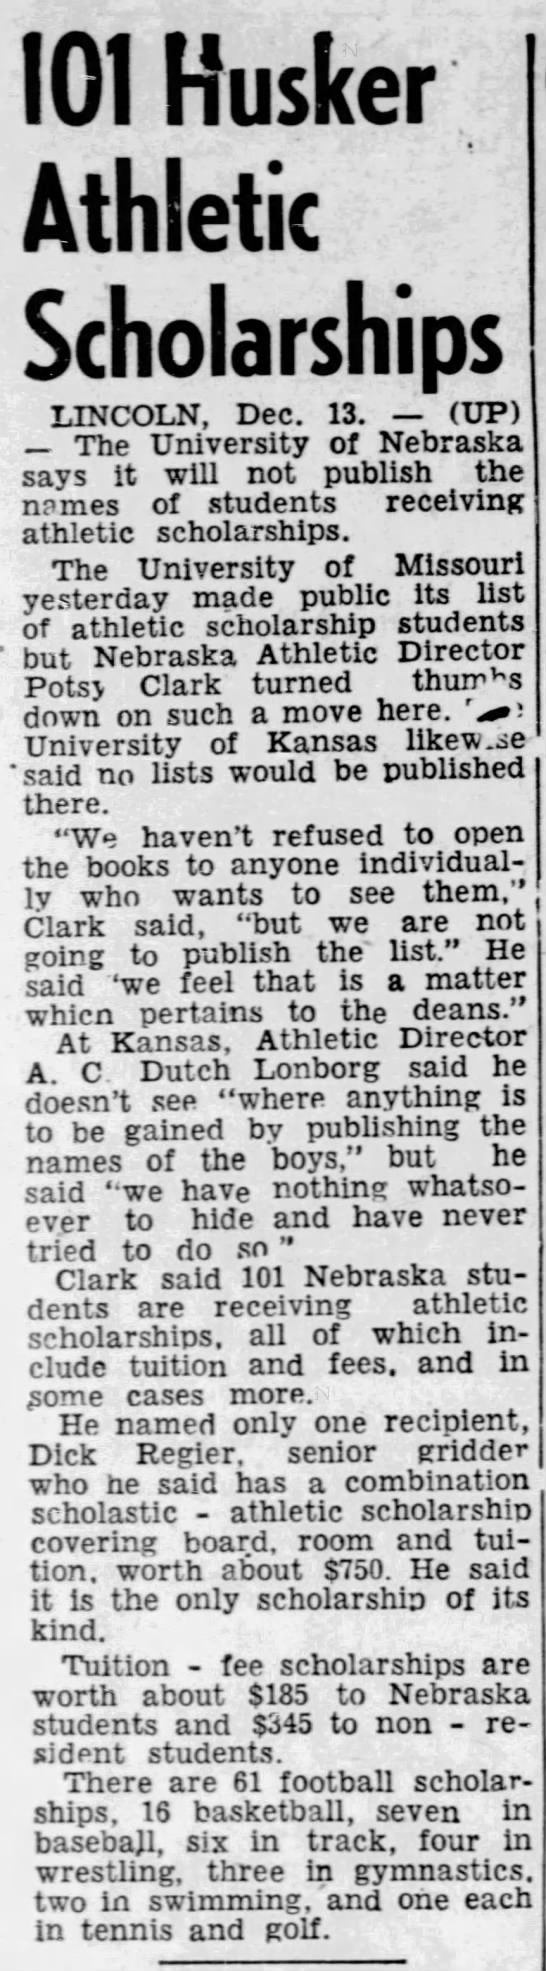 1951 Nebraska athletic scholarships - 